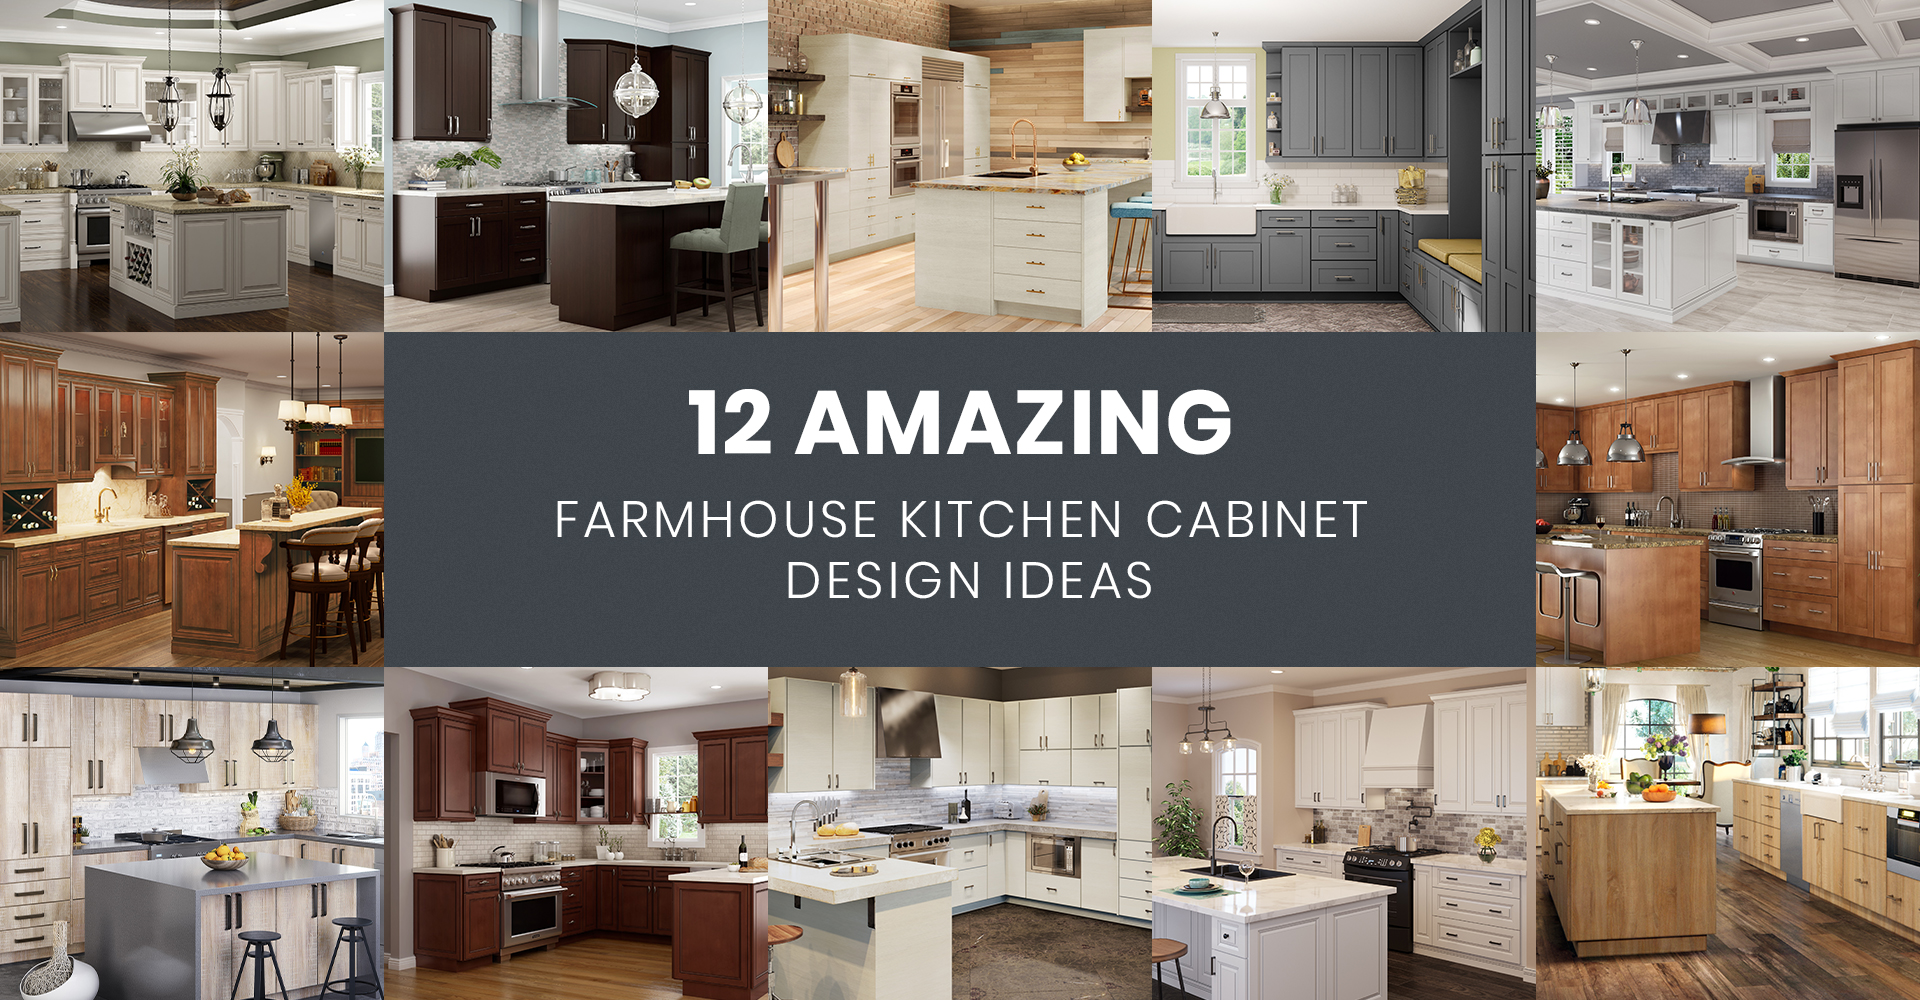 4 Key Elements of a Farmhouse-Style Kitchen